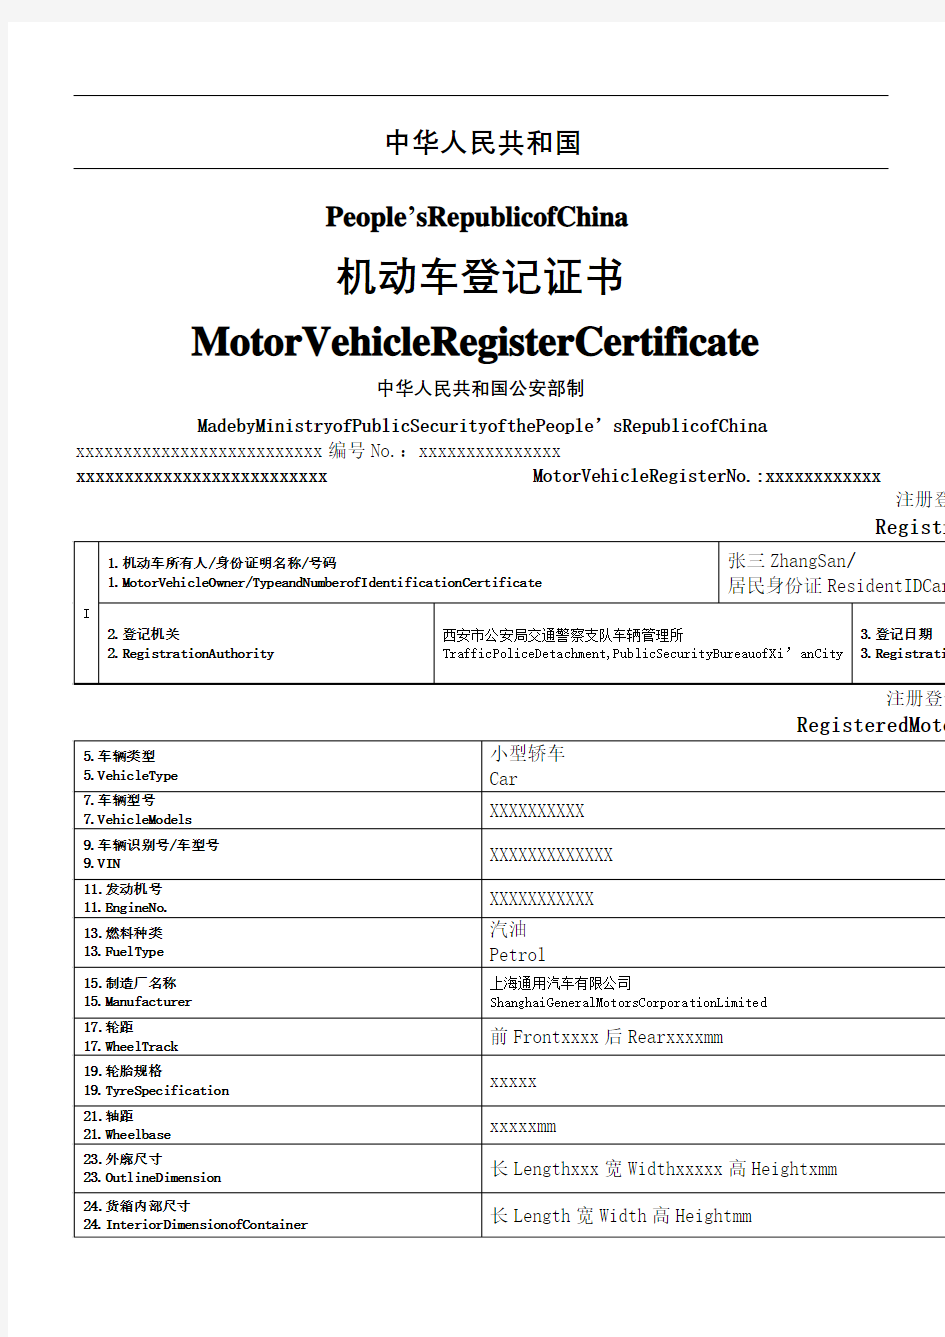 机动车登记证手册翻译件中英文完整版